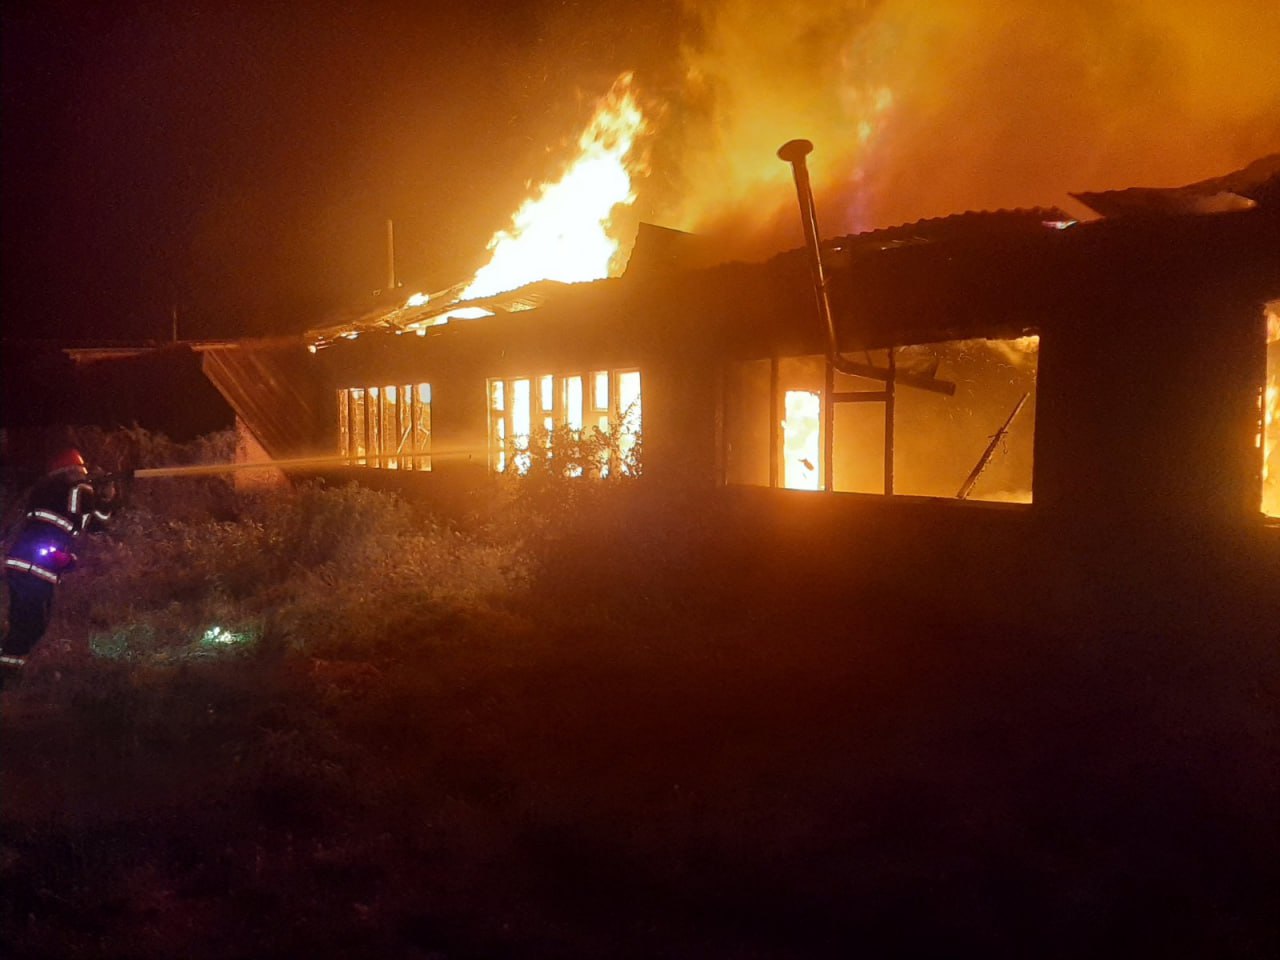 Ամրակից գյուղում այրվել է բնակելի տուն